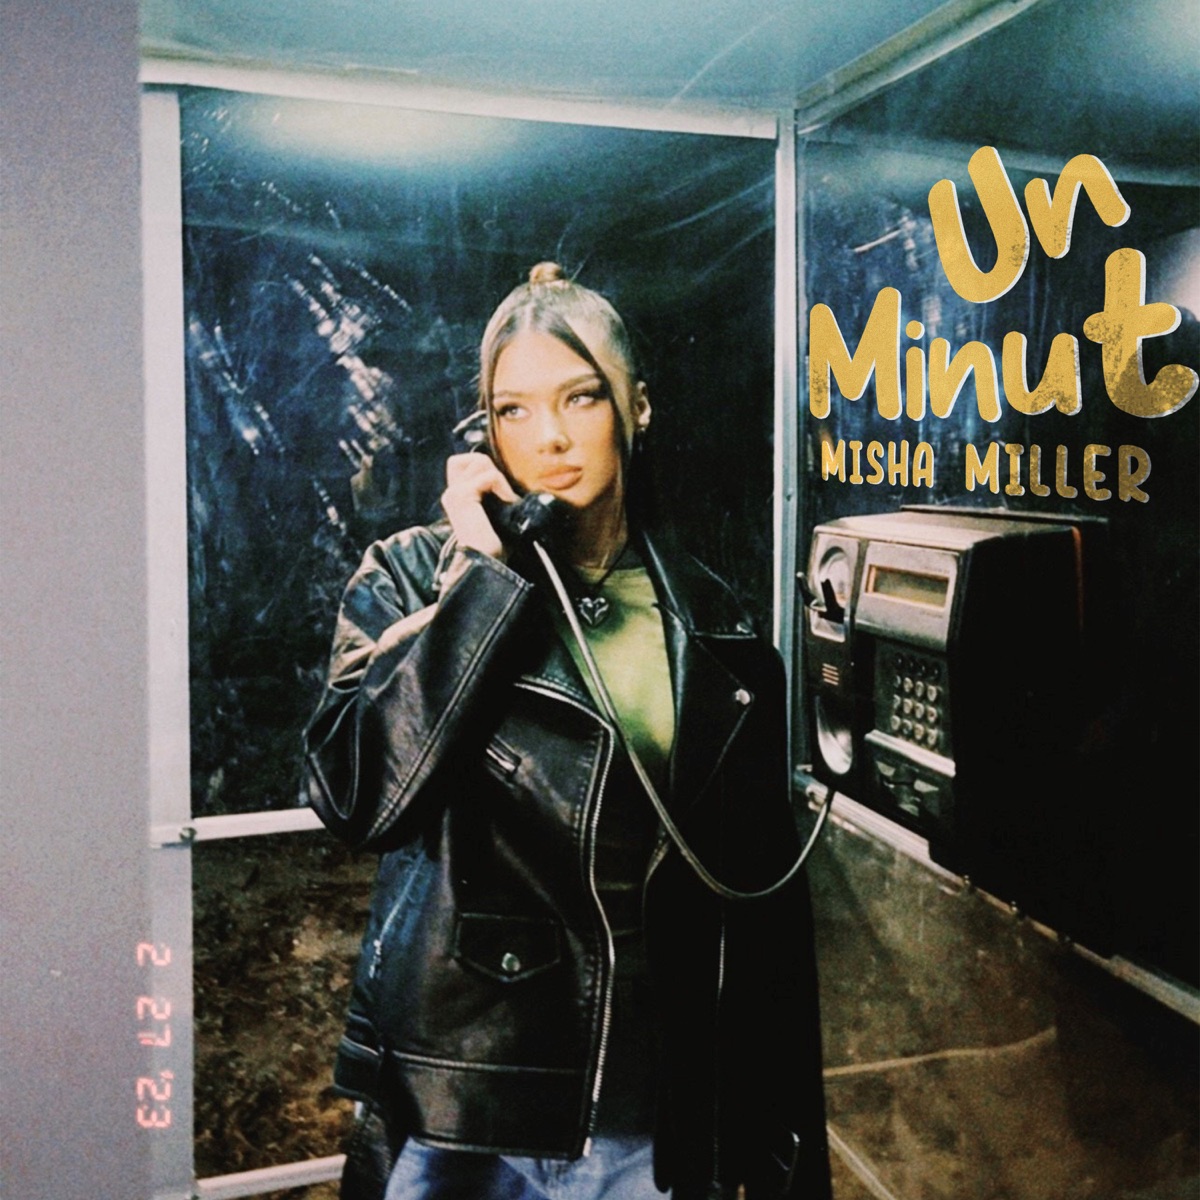 Misha Miller — Un Minut cover artwork